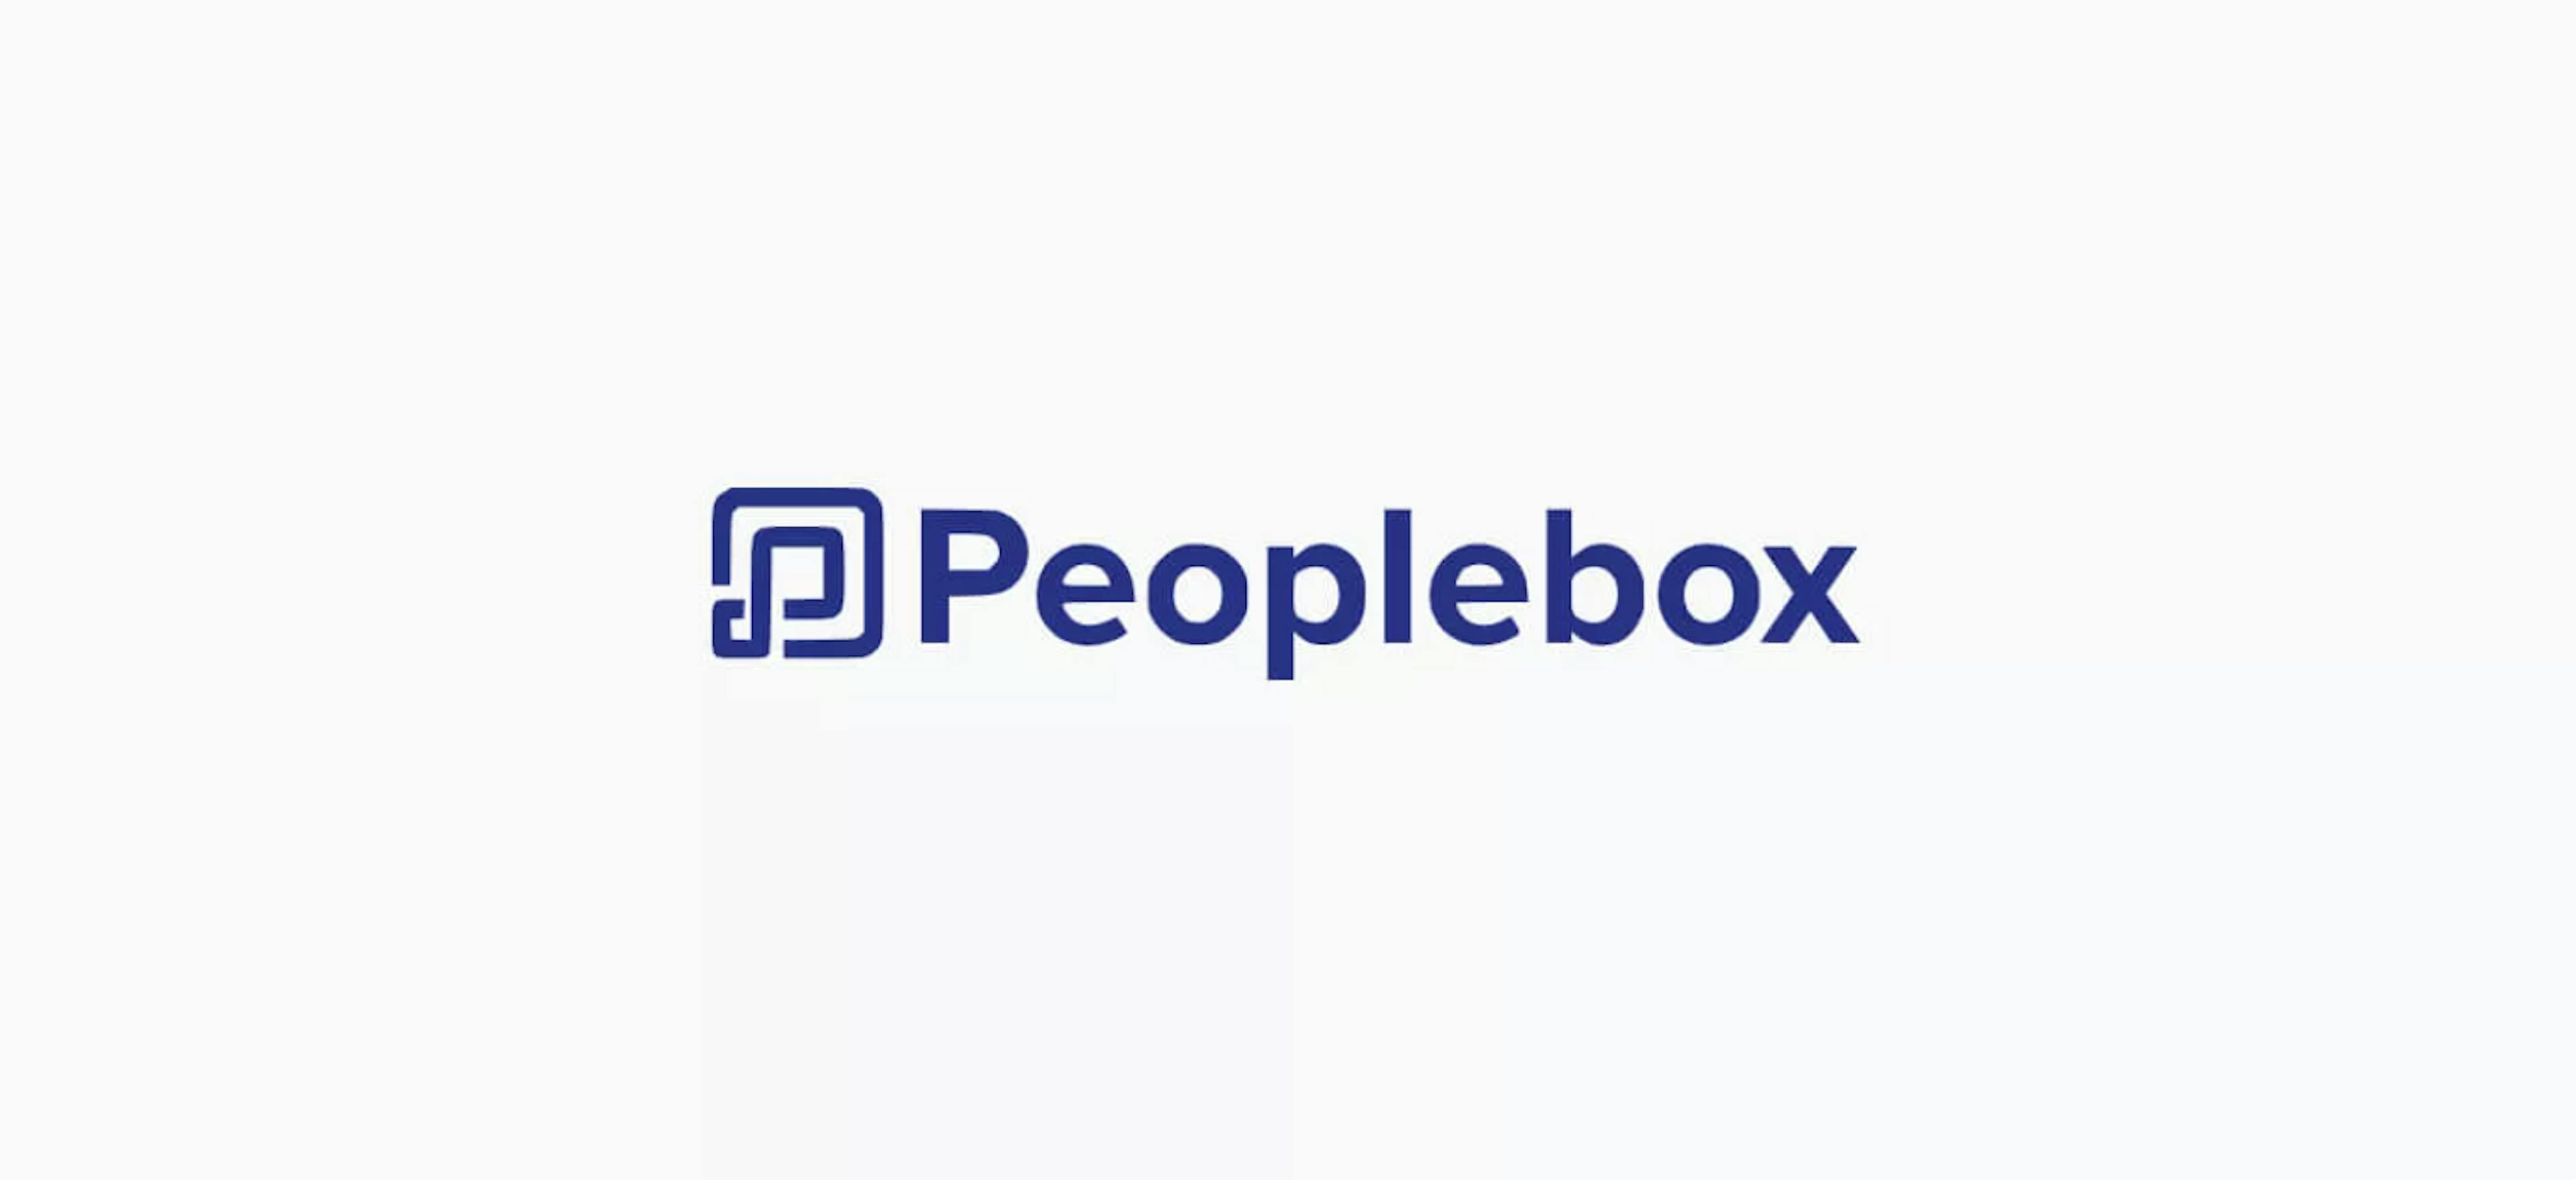 Logotipo de la caja de personas